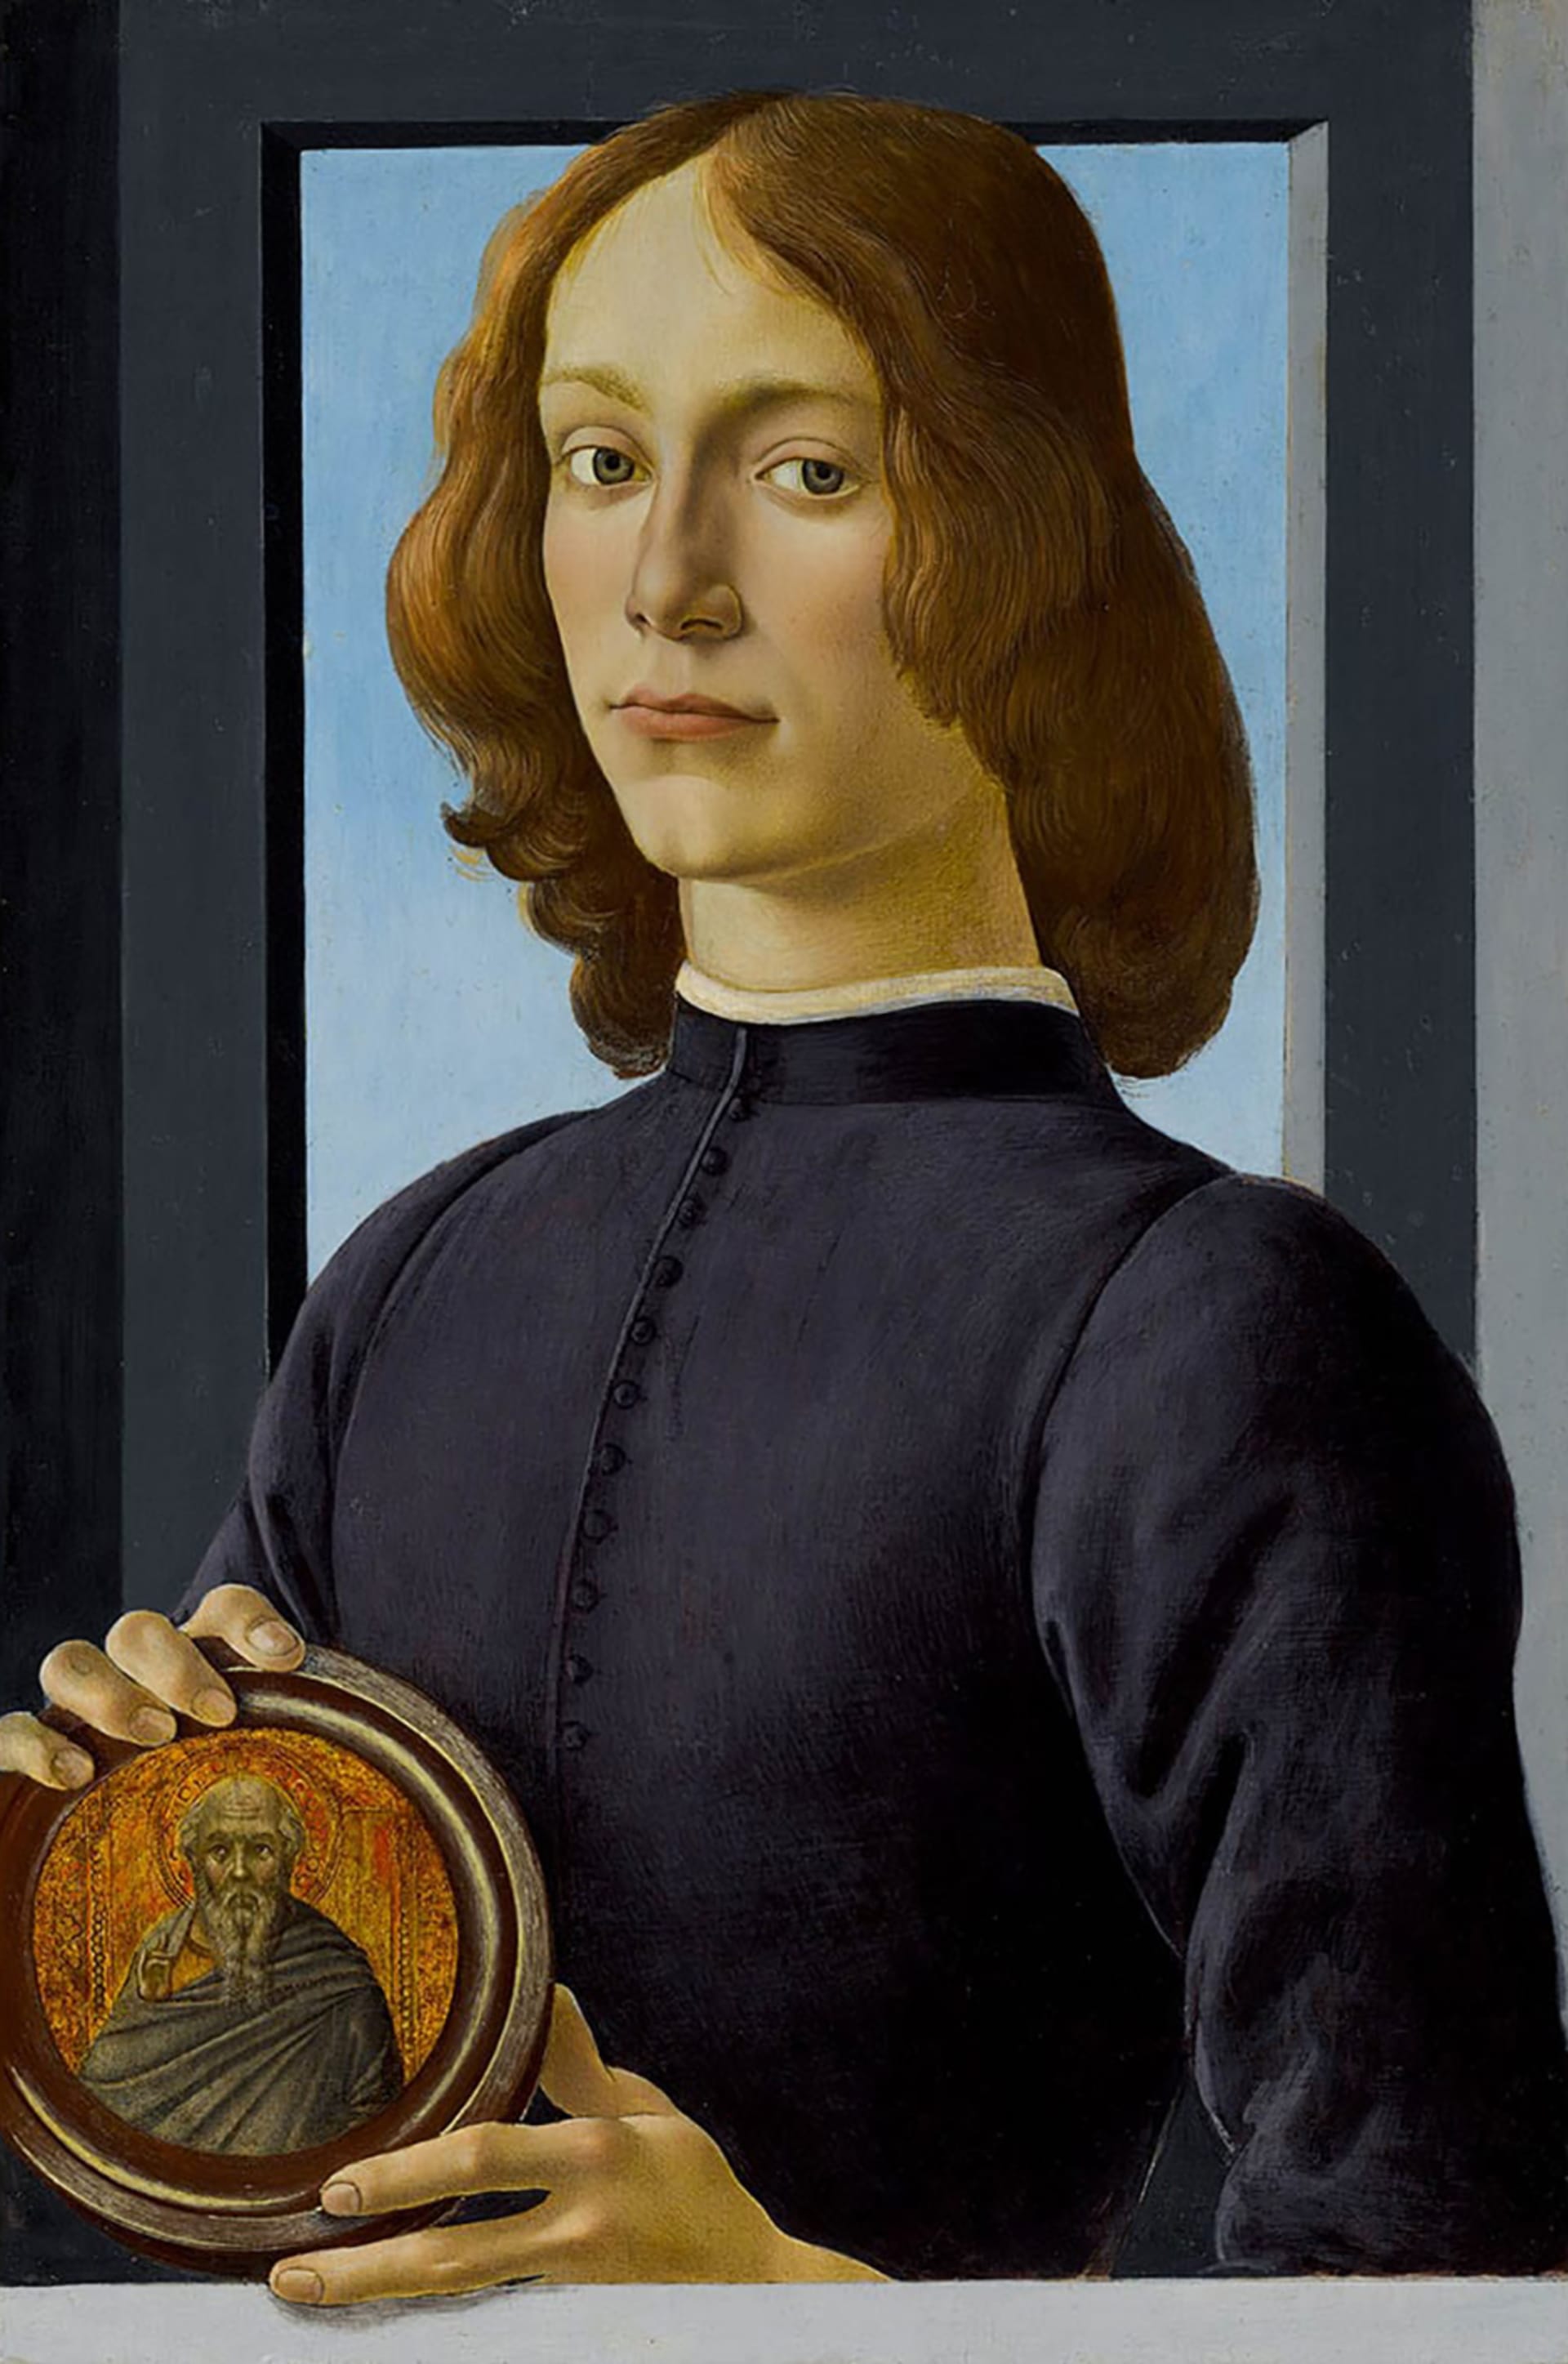 Obraz s názvem Young Man Holding a Roundel vydražený za 92,2 milionu dolarů se vyhoupl na pozici nejhodnotnějšího Botticelliho díla a zároveň i nejdražšího portrétu prodaného v aukci.